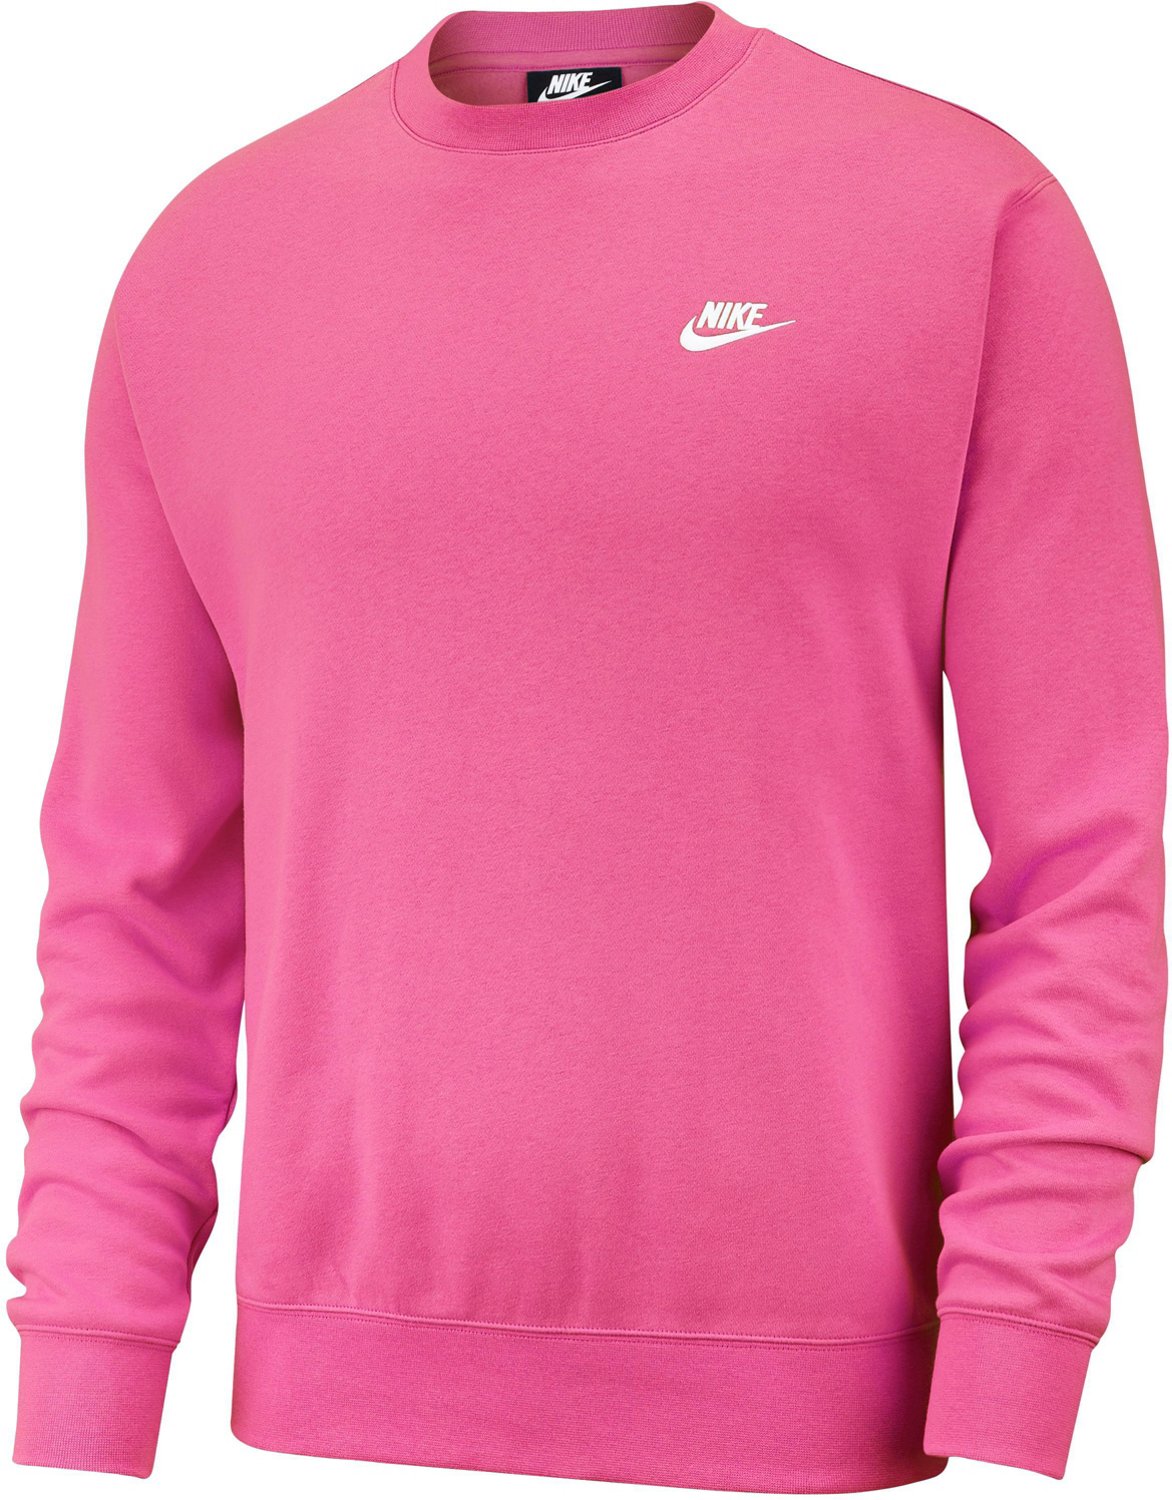 nike crew sweatshirt pink